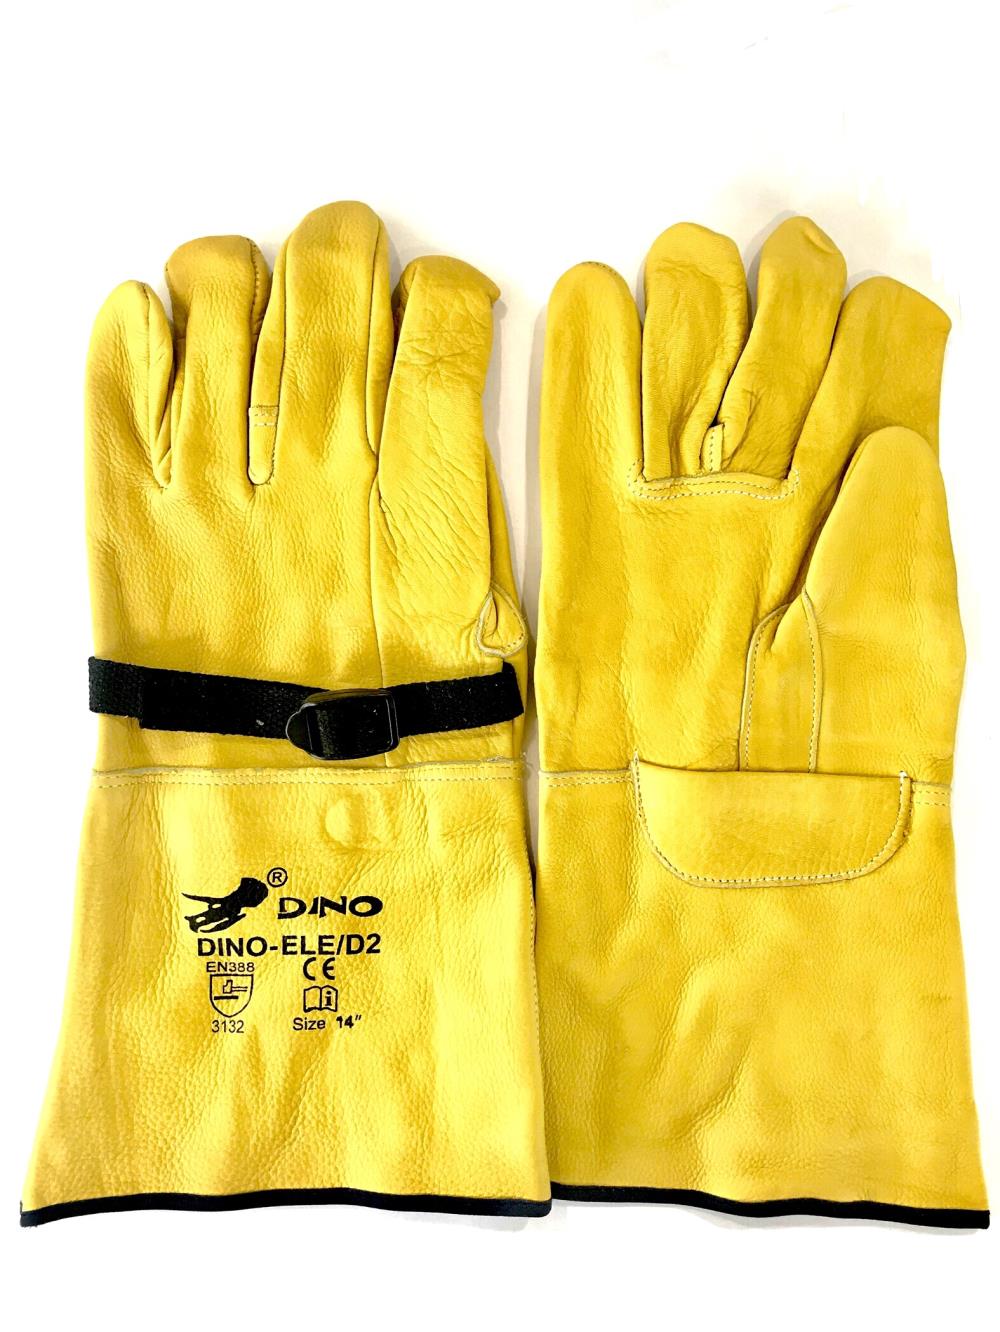 ถุงมือหนังสวมทับถุงมือป้องกันไฟฟ้าแรงสูง,ถุงมือหนังสวมทับถุงมือป้องกันไฟฟ้าแรงสูง , ถุงมือหนังสวมทับถุงมือกันไฟฟ้า,DINO,Plant and Facility Equipment/Safety Equipment/Gloves & Hand Protection